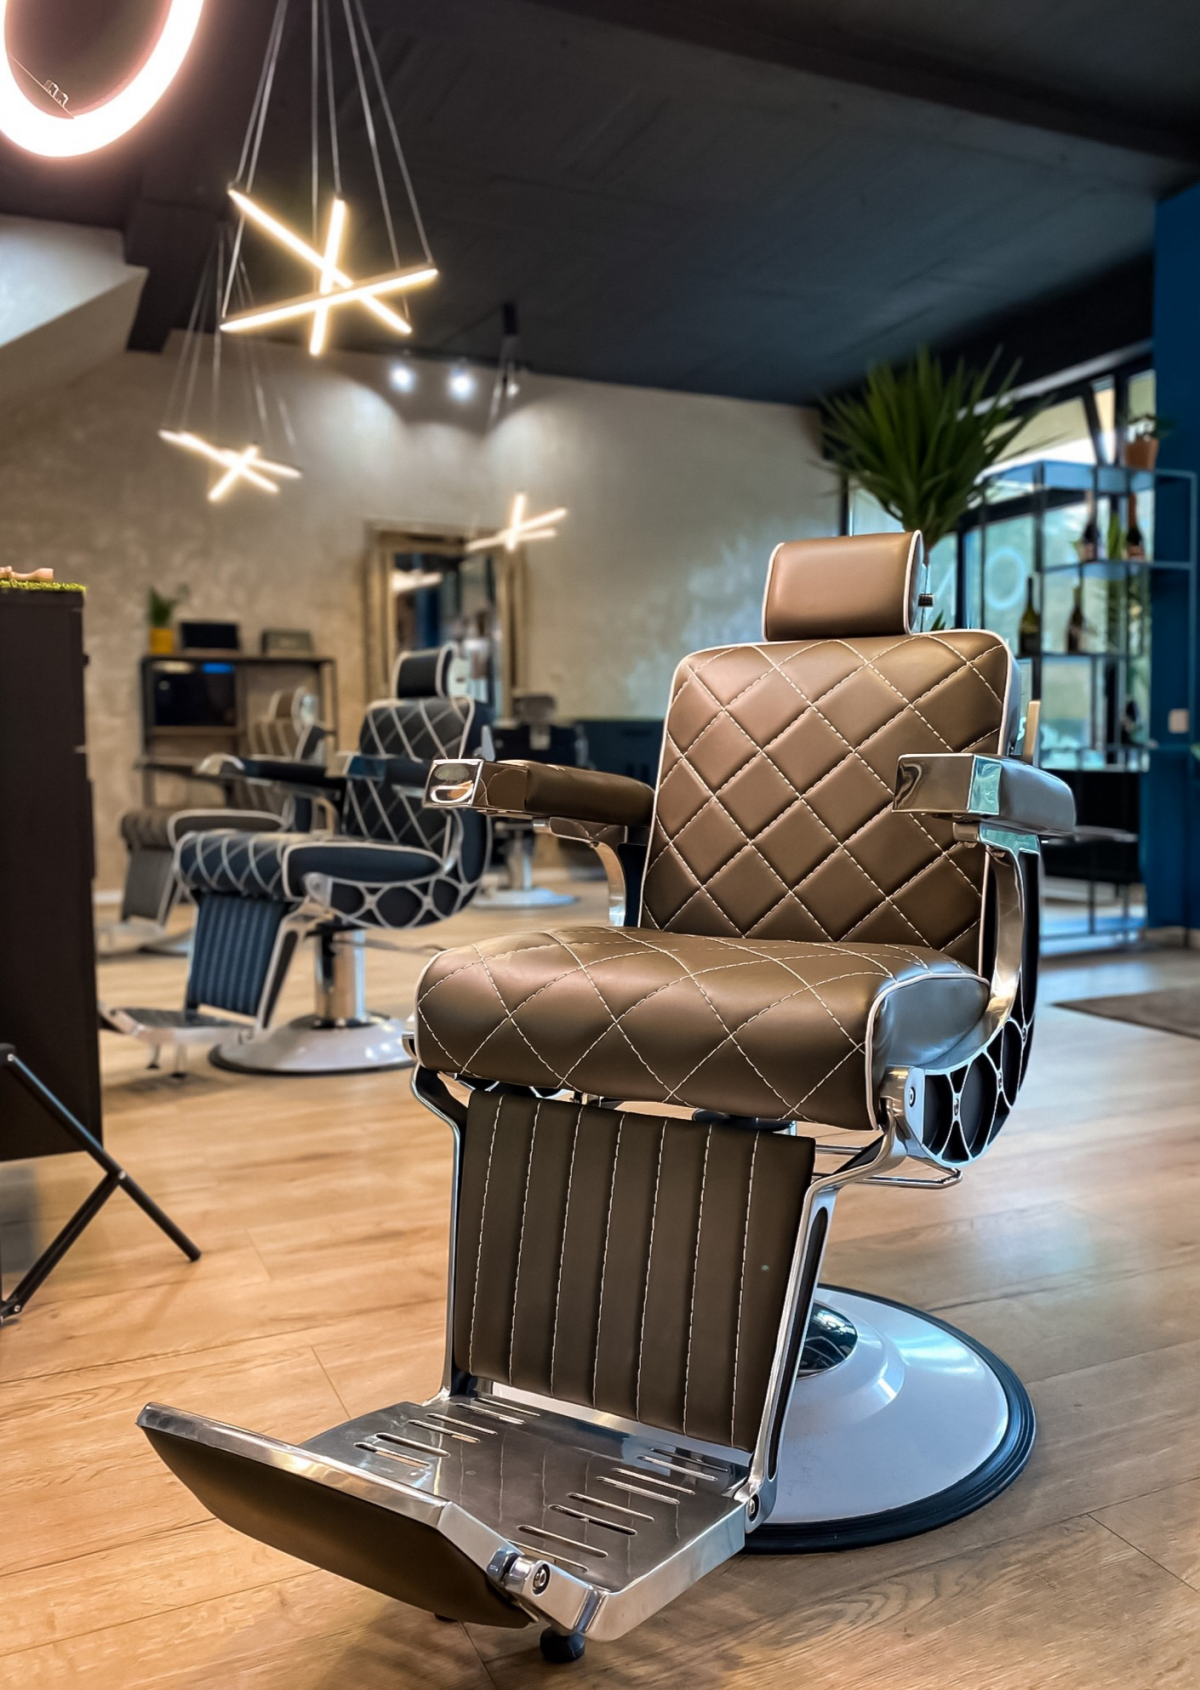 Beyond Barber Lounge Nitra